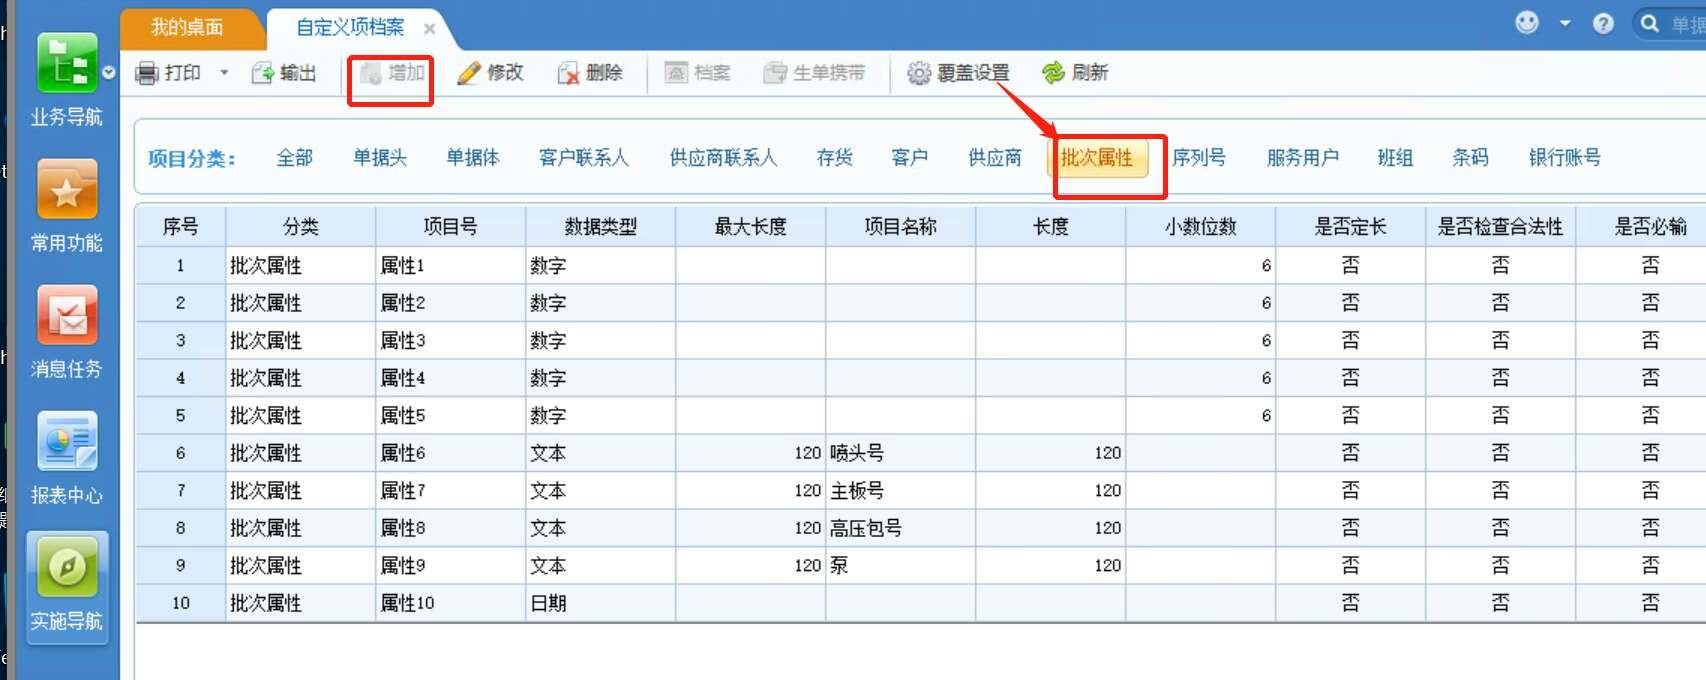 广东财务软件公司
:1m铸造财务软件价格